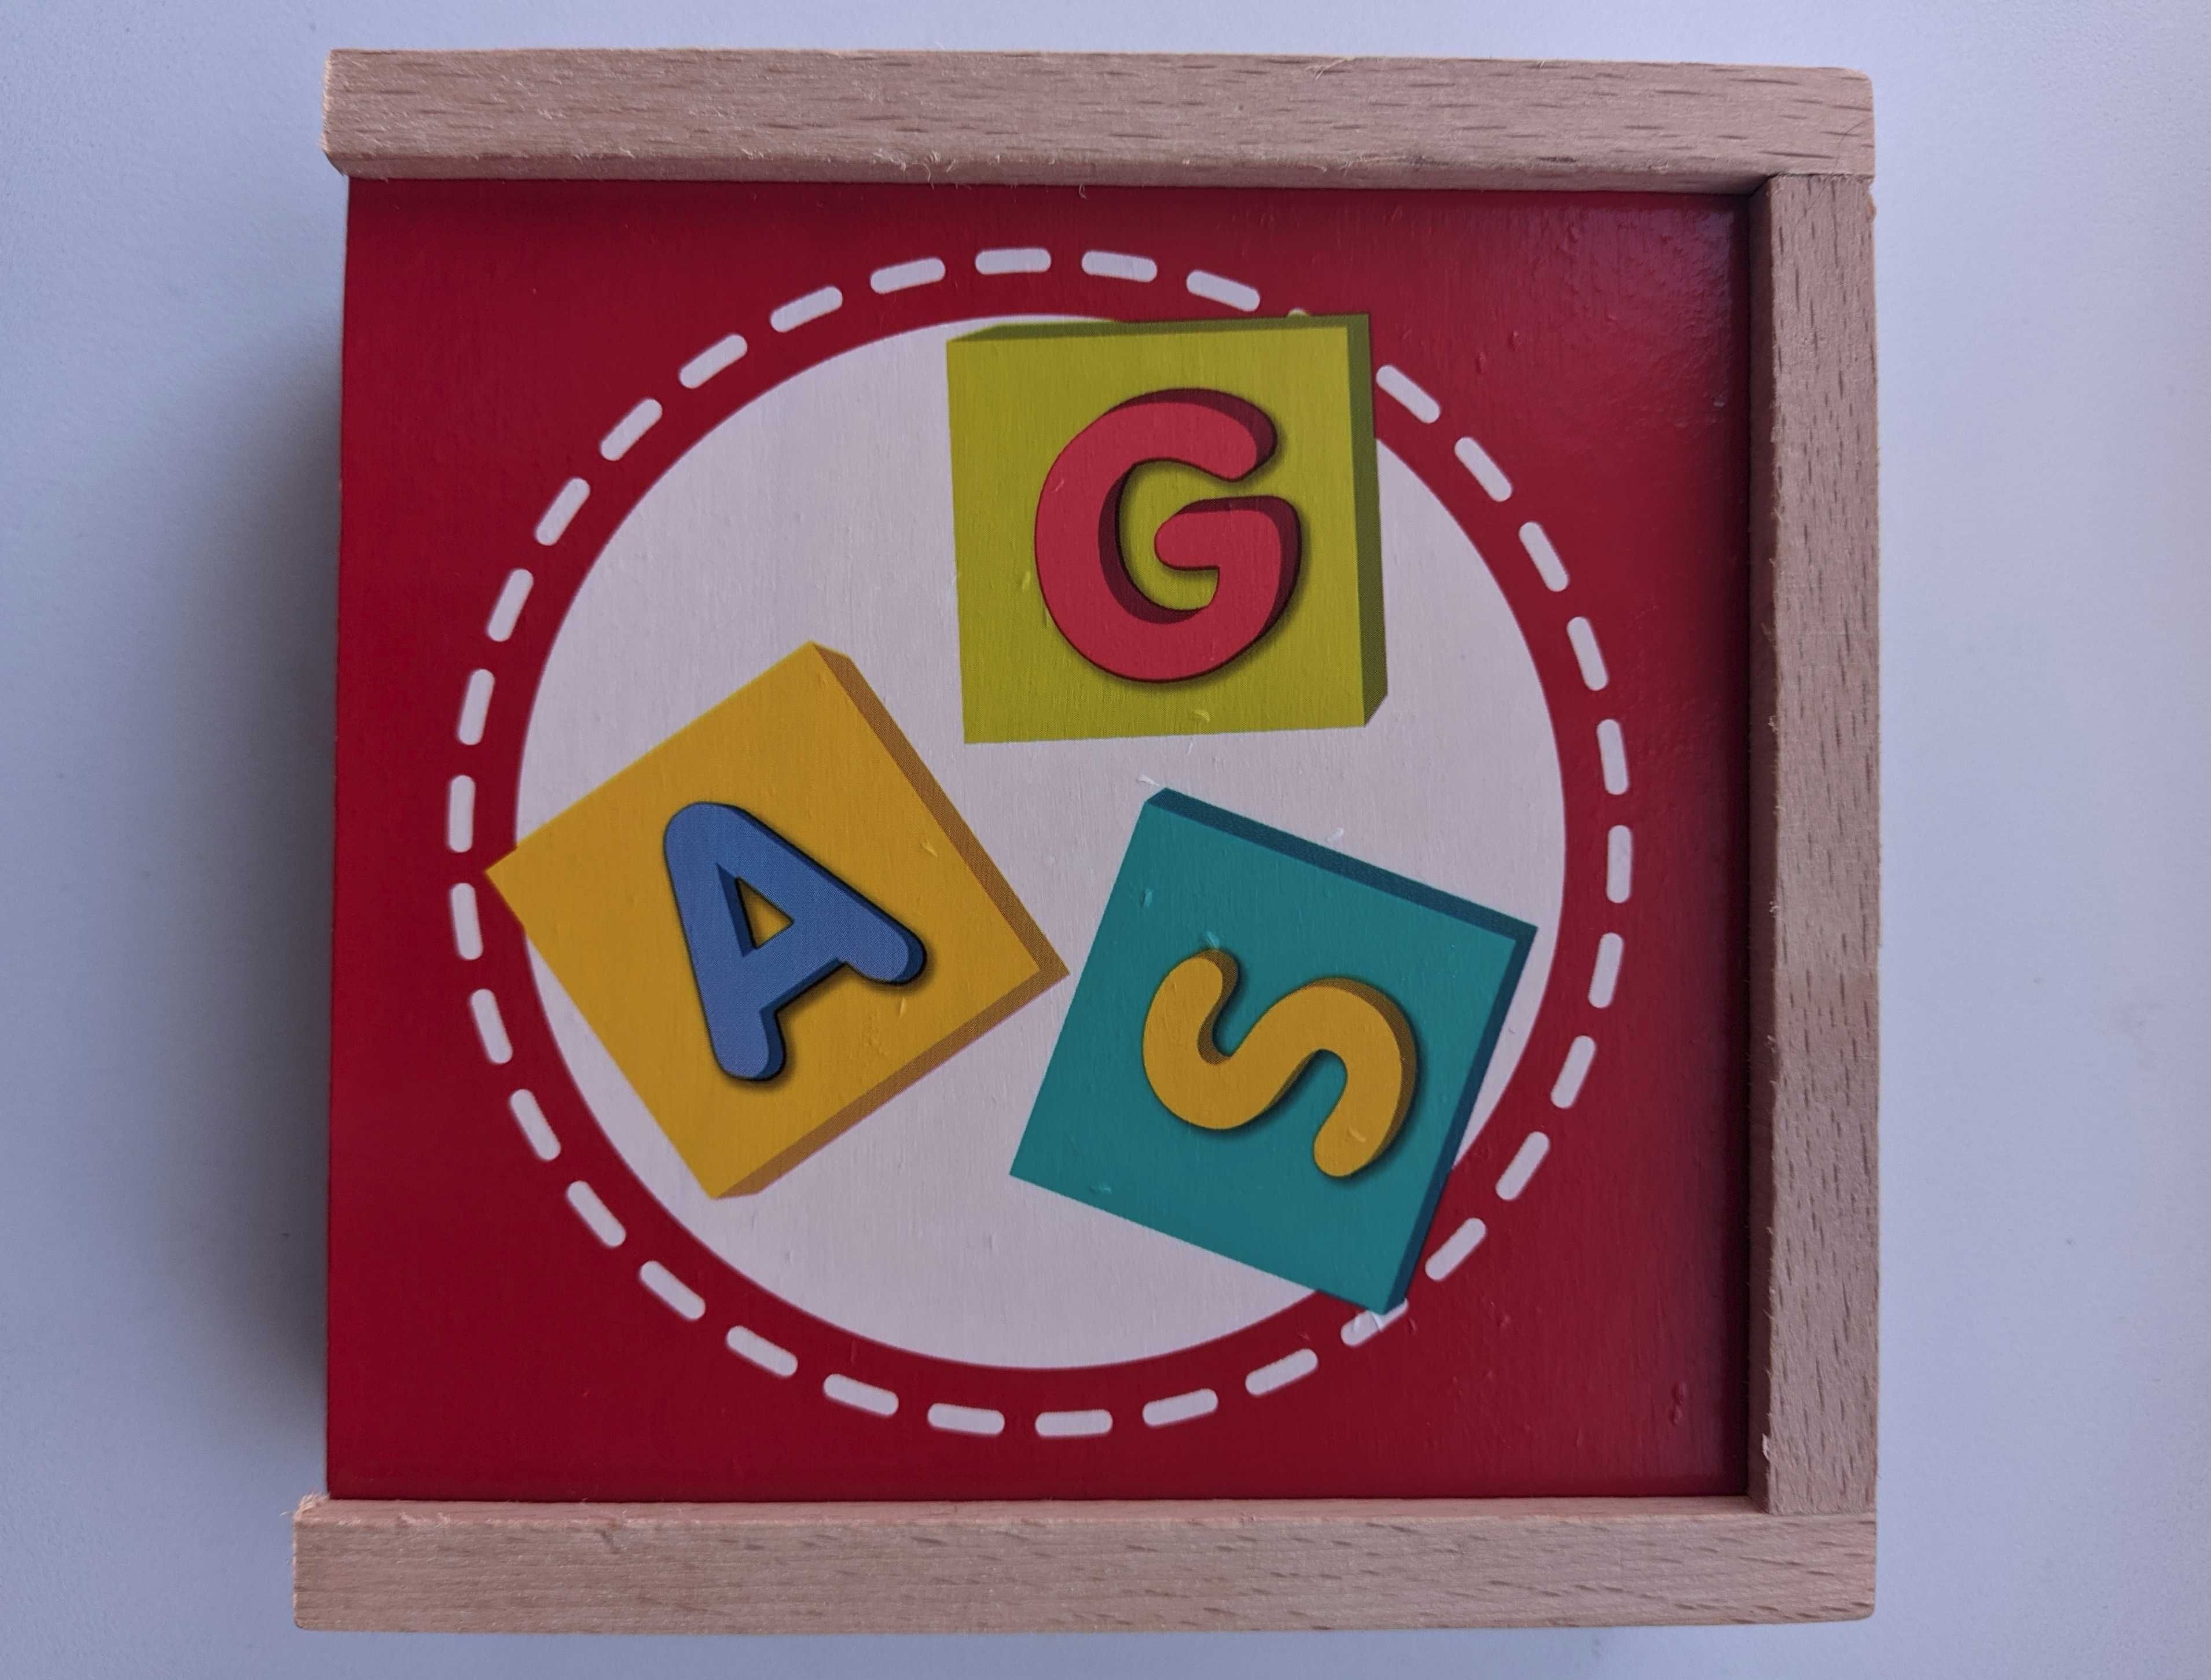 Lernbox Buchstaben Германия детская игра Учим алфавит из коробки